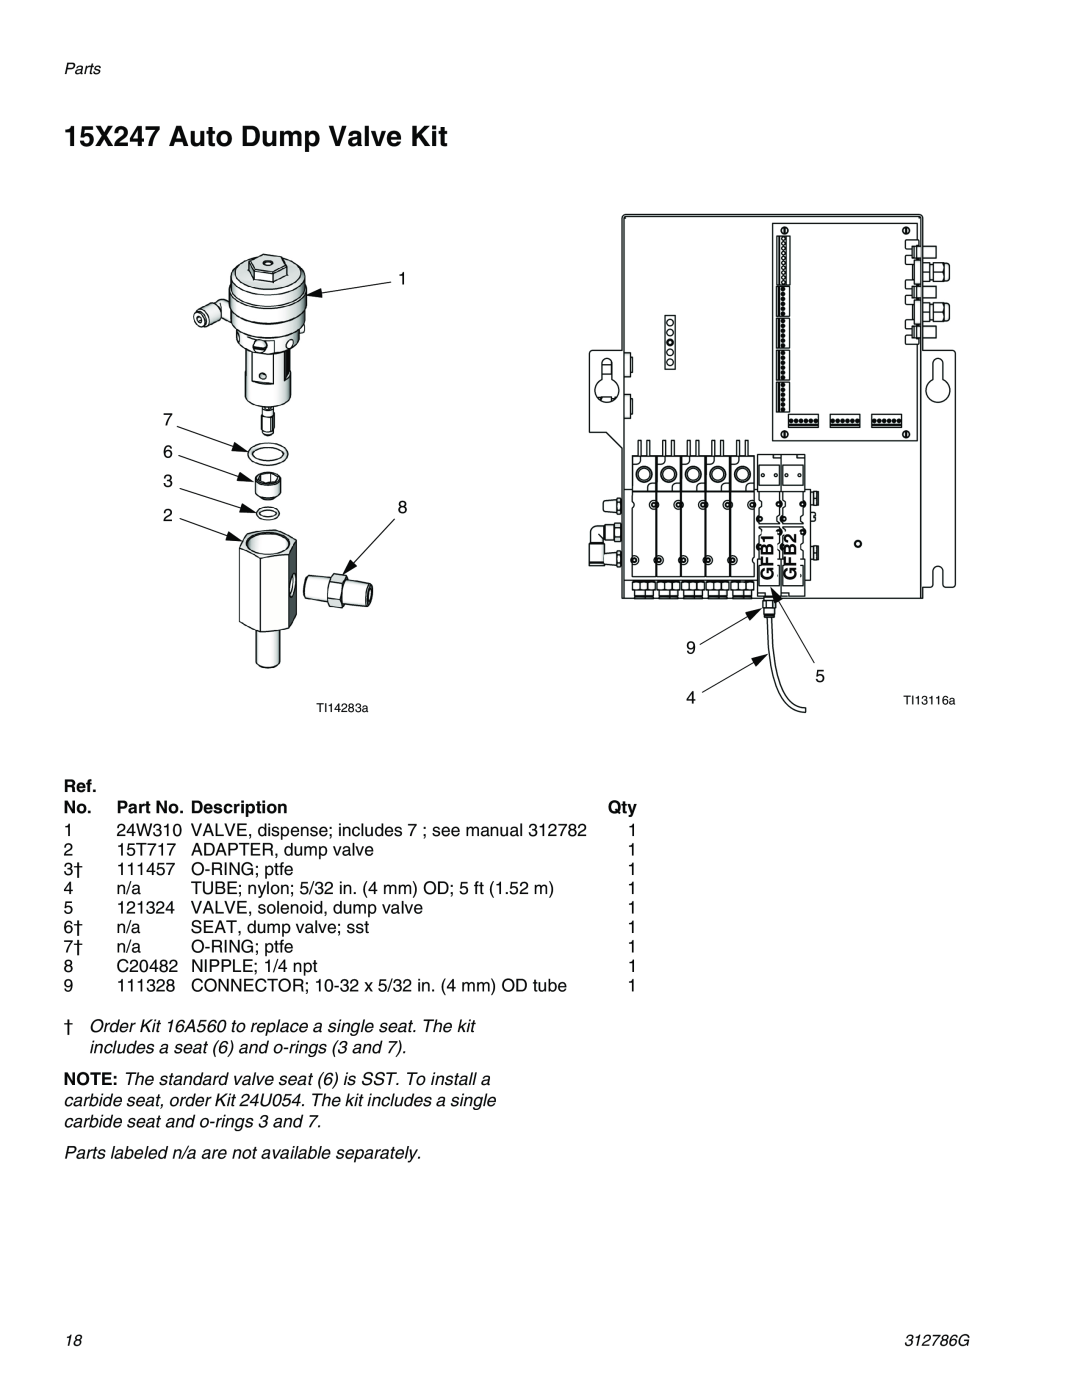 Graco TI12954a, TI12743a important safety instructions 15X247 Auto Dump Valve Kit, GFB1, GFB2, Part No. Description 